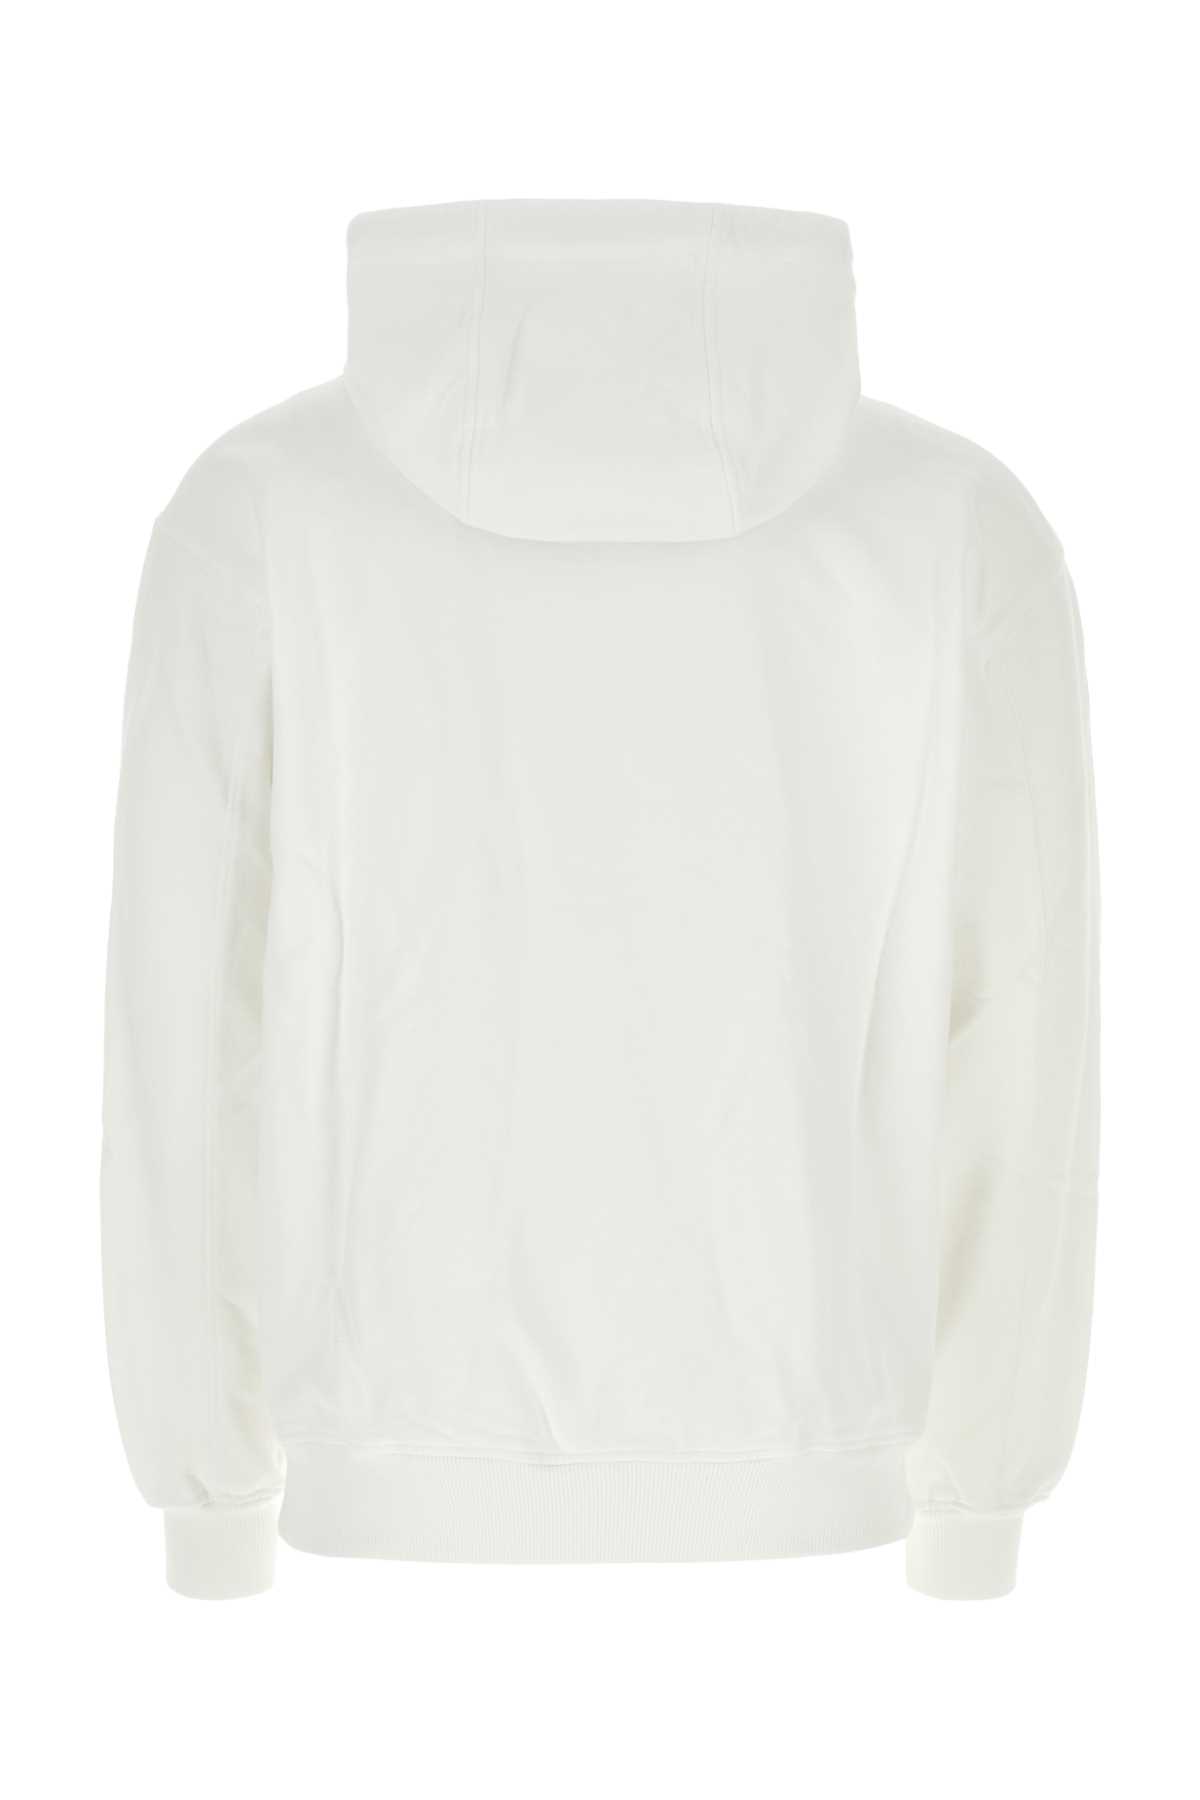 Casablanca White Cotton Sweatshirt In Casspotenbal